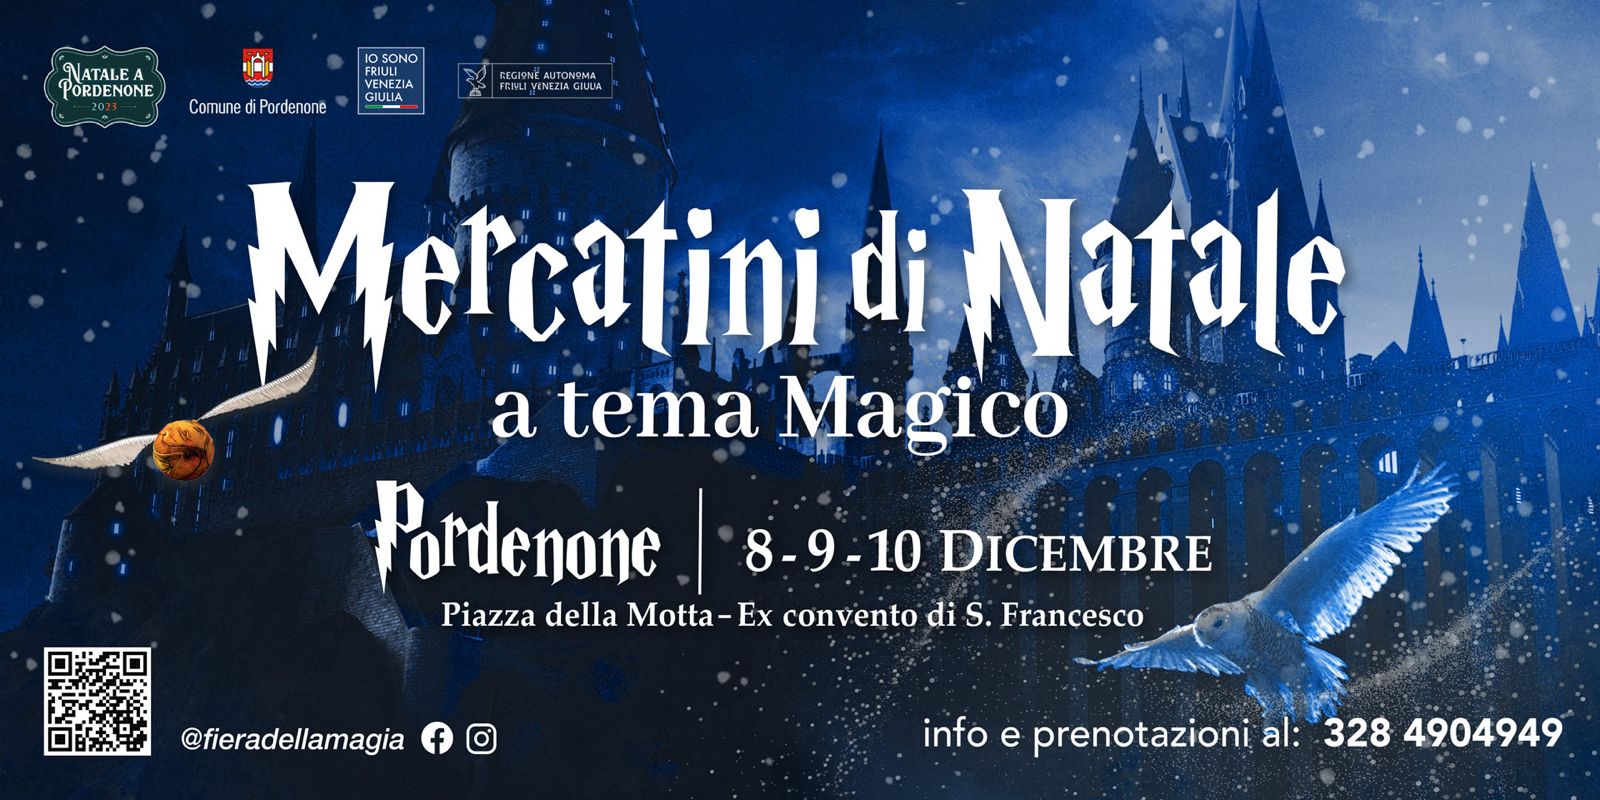 Mercatini di Natale a Tema Magico - Pordenone - EventiFVG.it